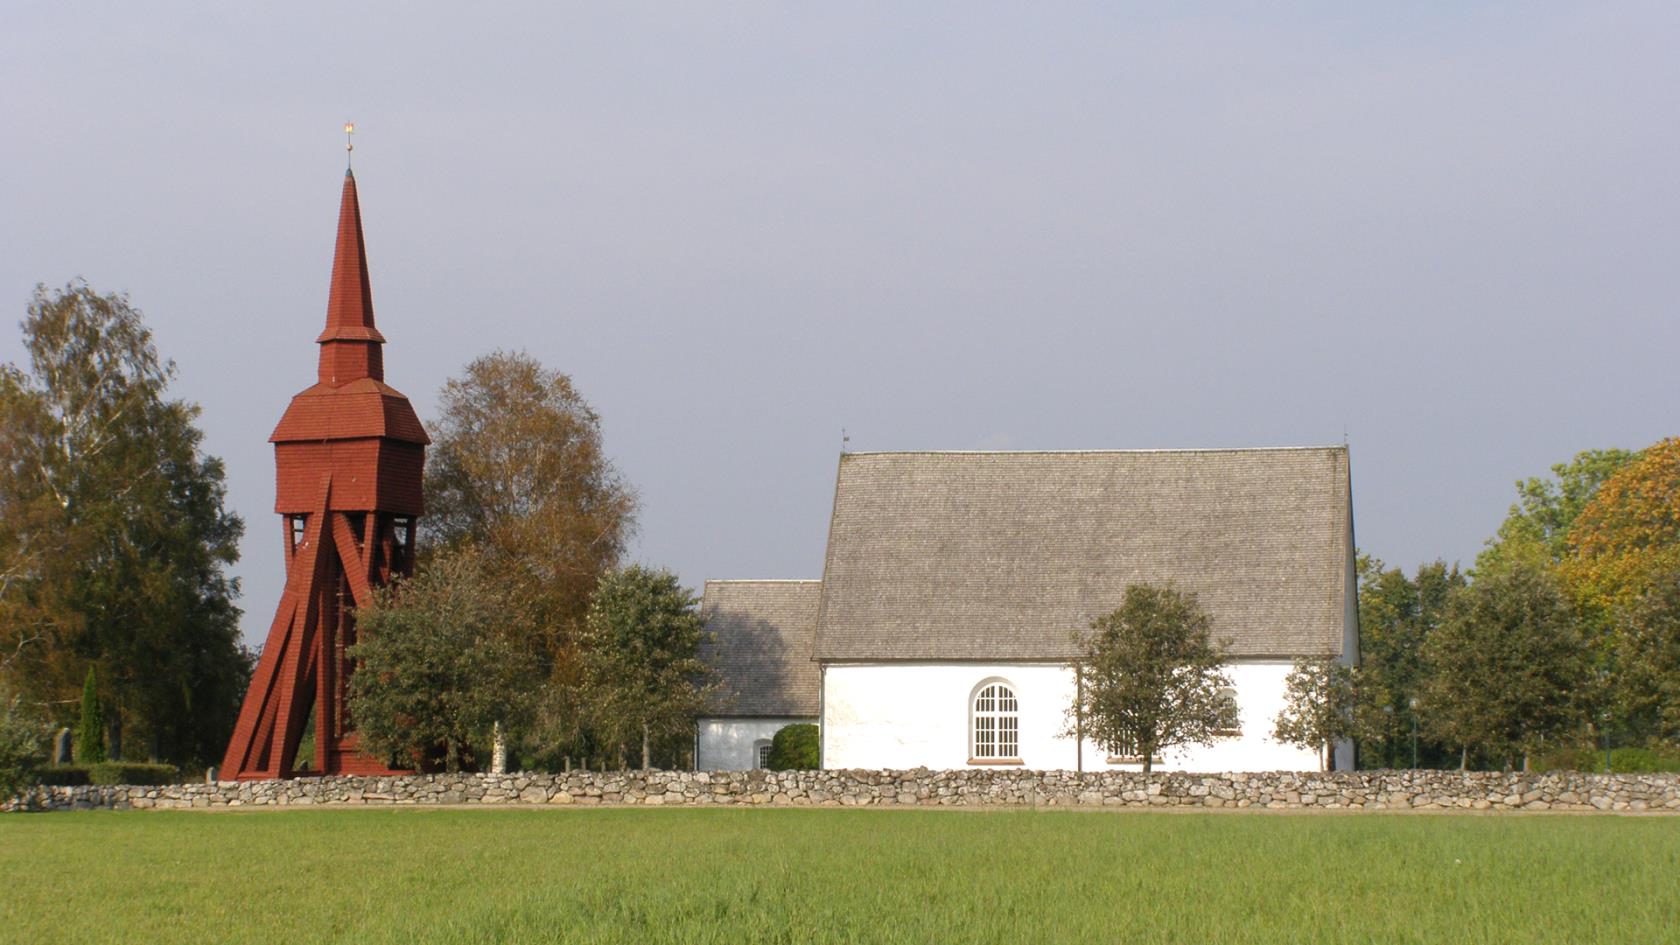 Lekaryds kyrka